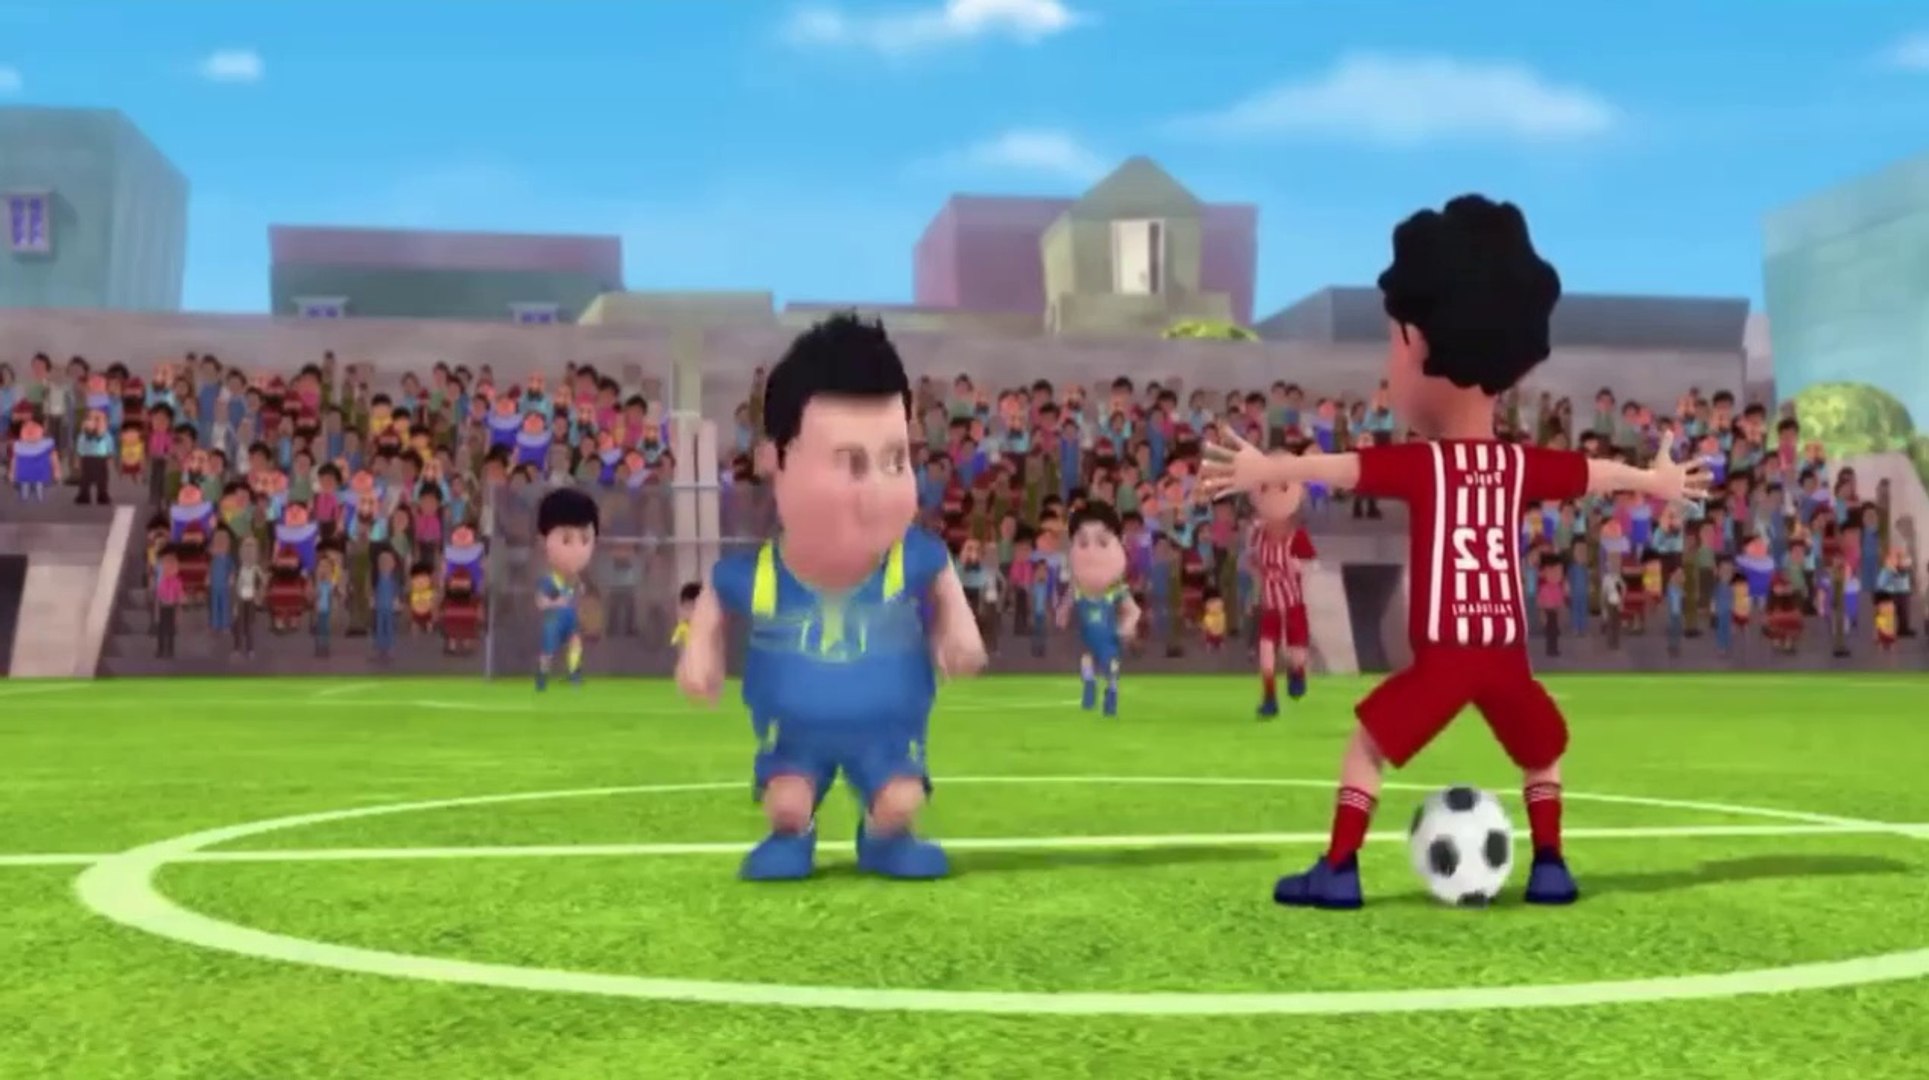 Vir The Robot Boy - Football Match - football match - Vir robot man -  cartoon - stories - comedy - video Dailymotion